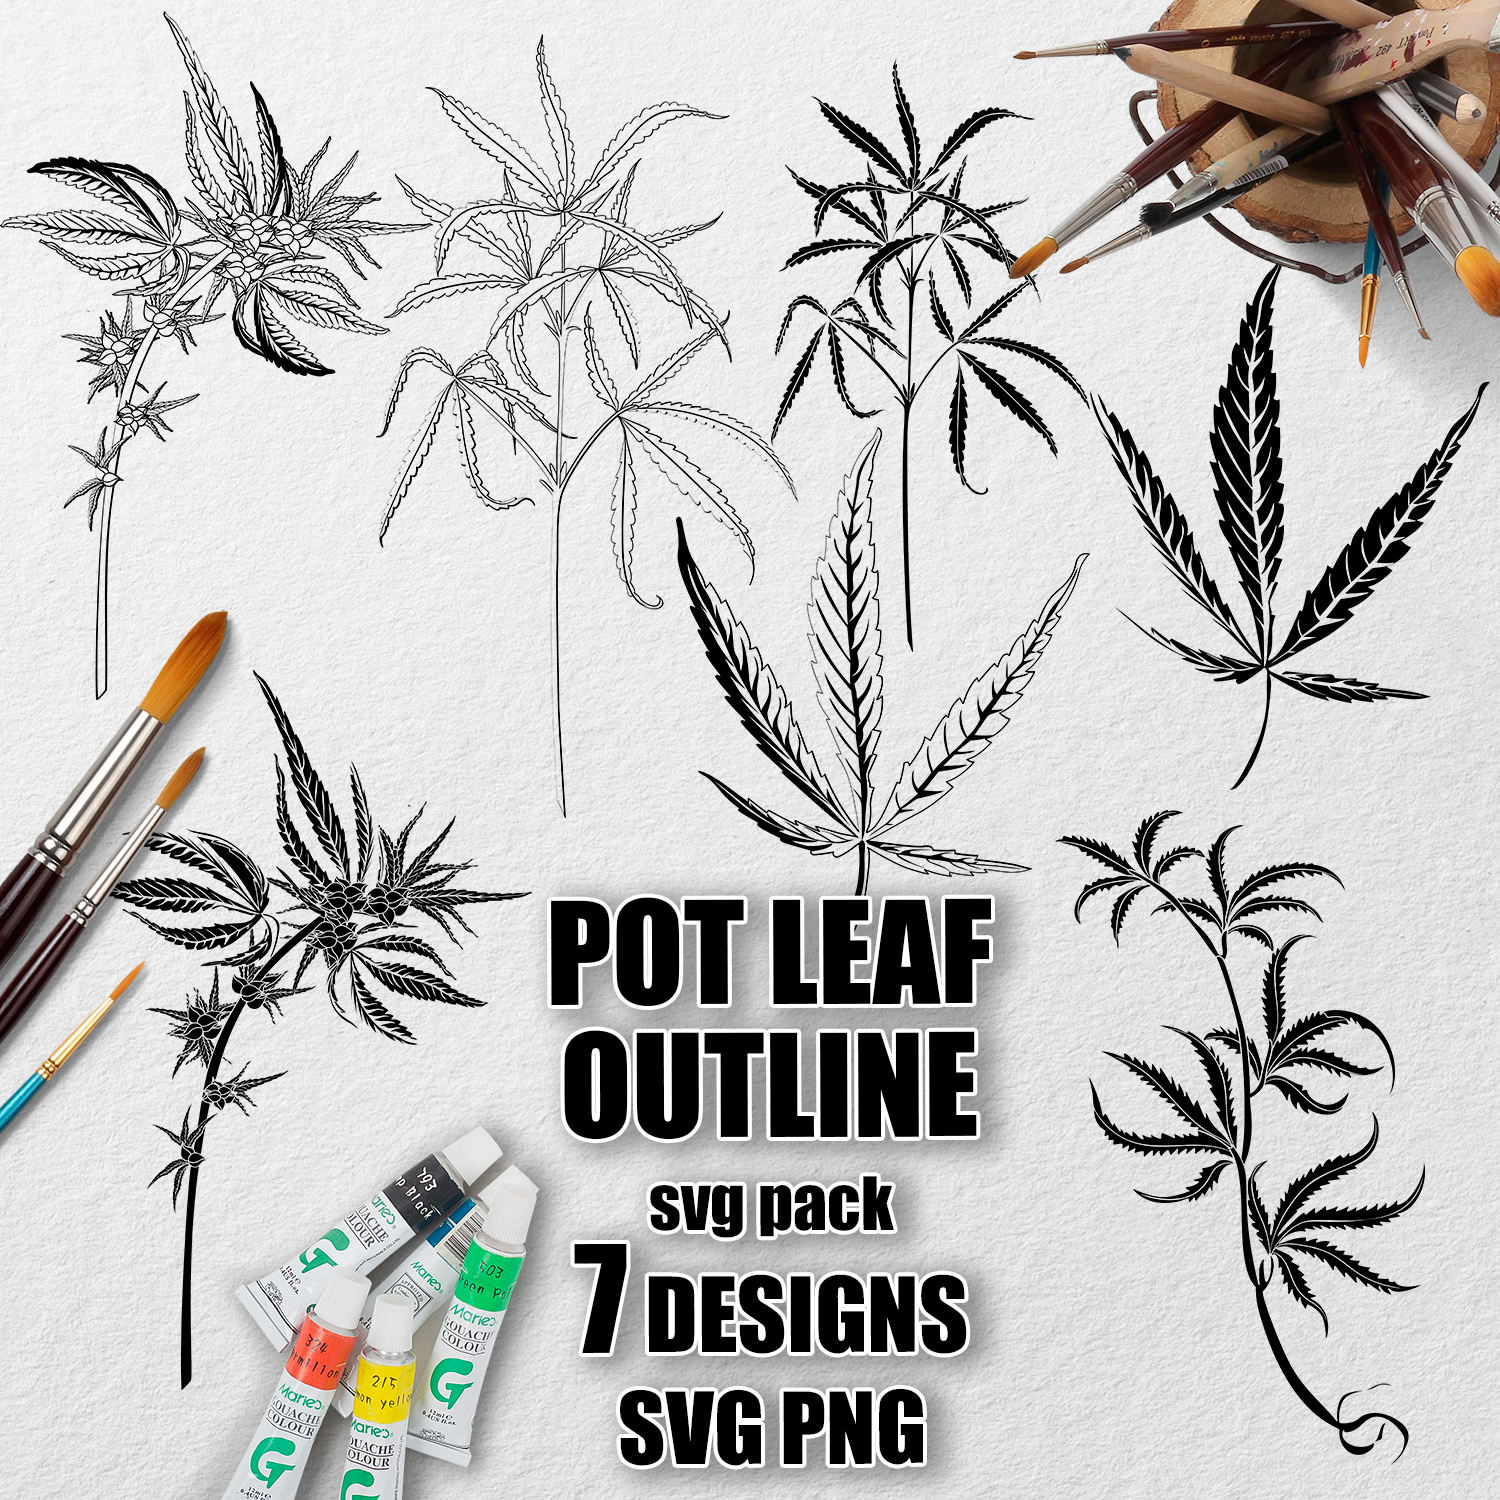 Preview pot leaf outline svg.